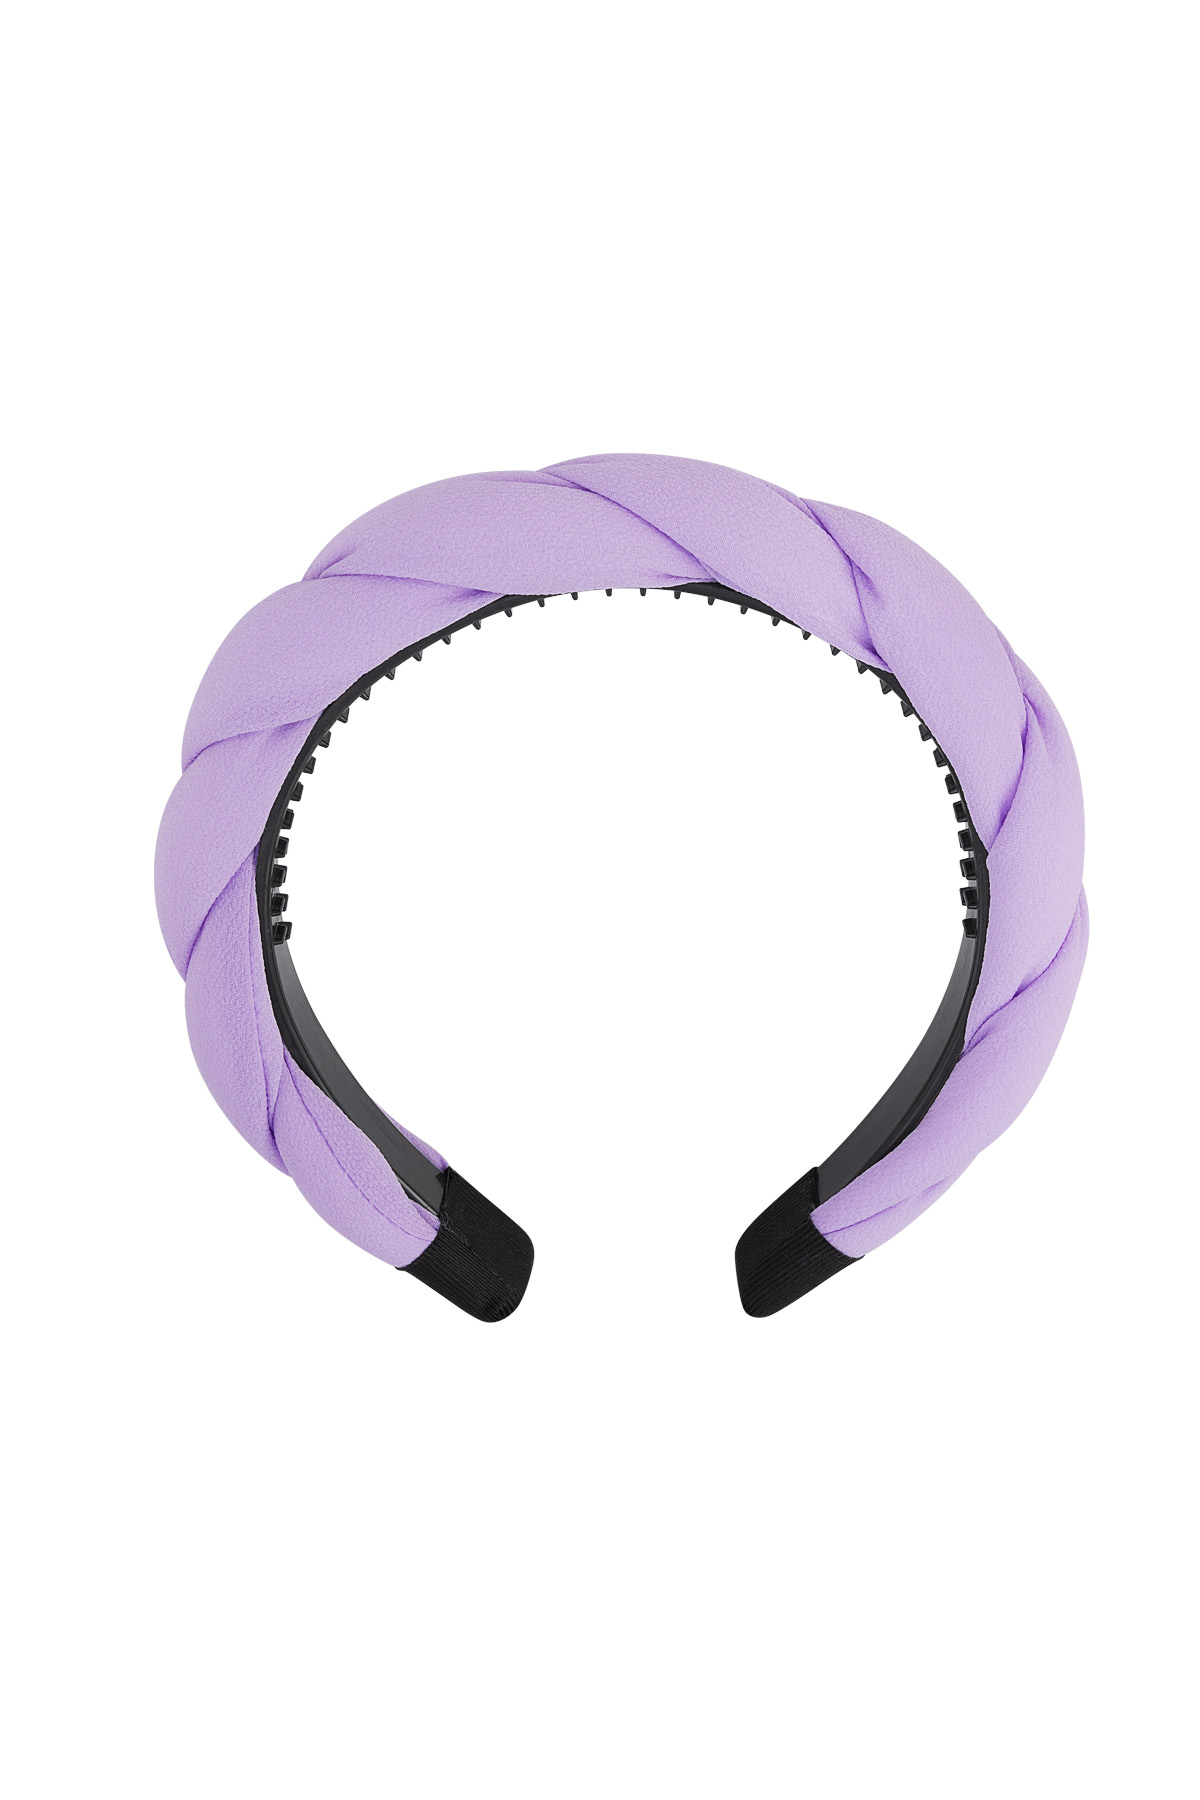 Détail tresse bandeau - lilas Violet Plastique h5 